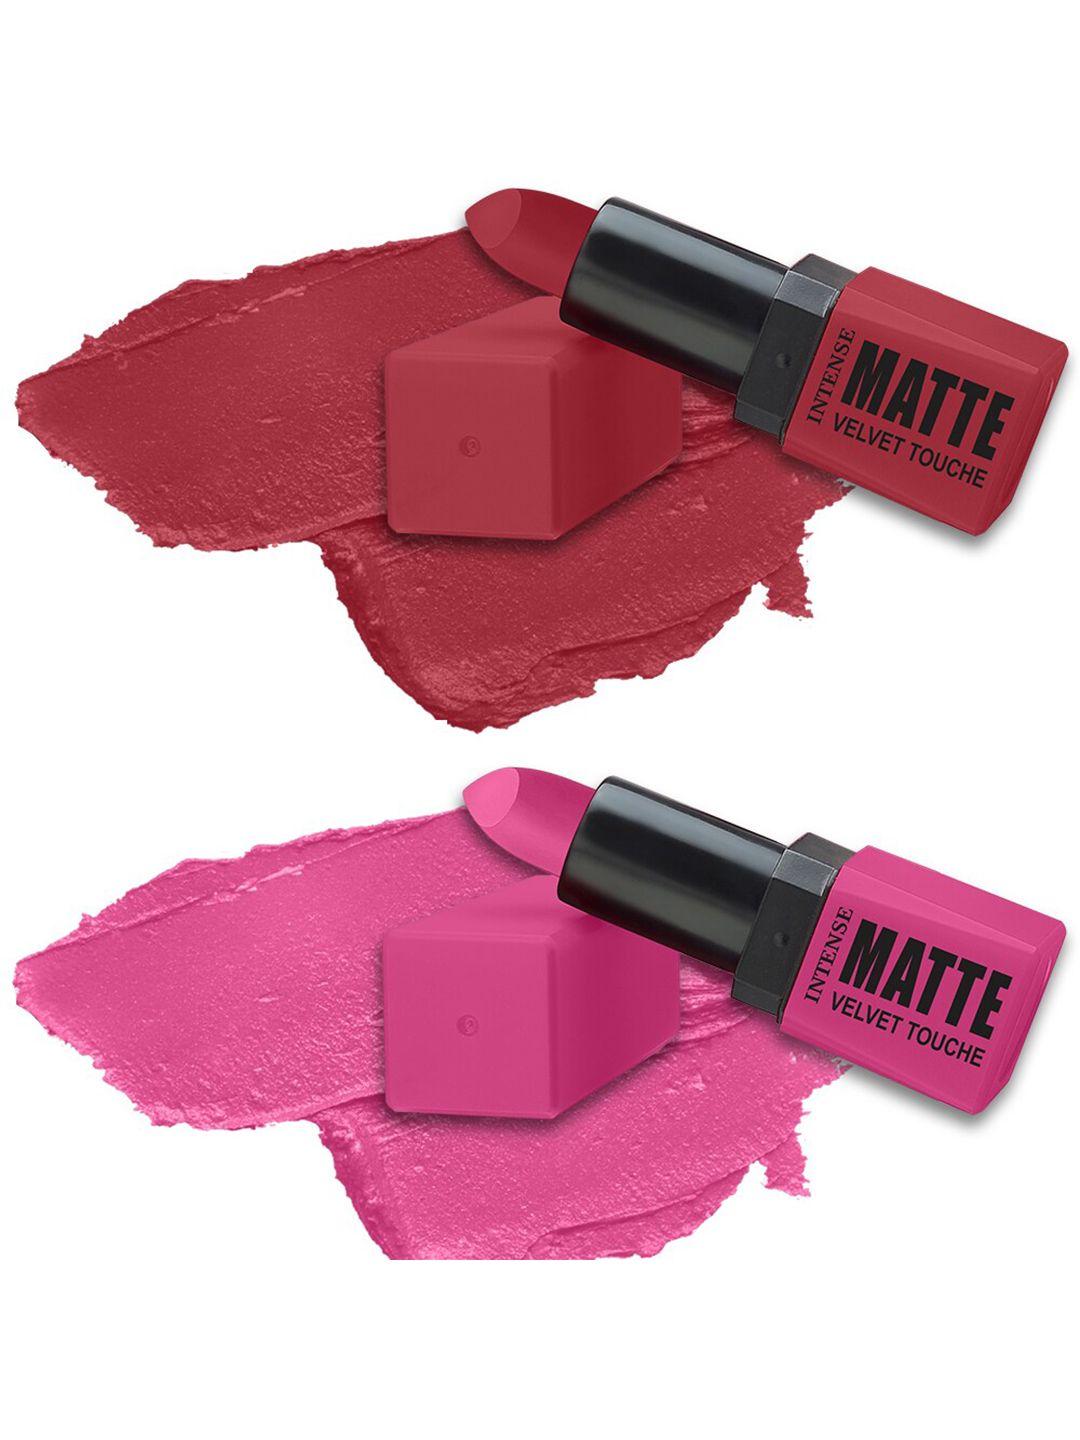 forsure set of 2 intense matte velvet touche long lasting lipsticks 3.5g each - 309 & 303